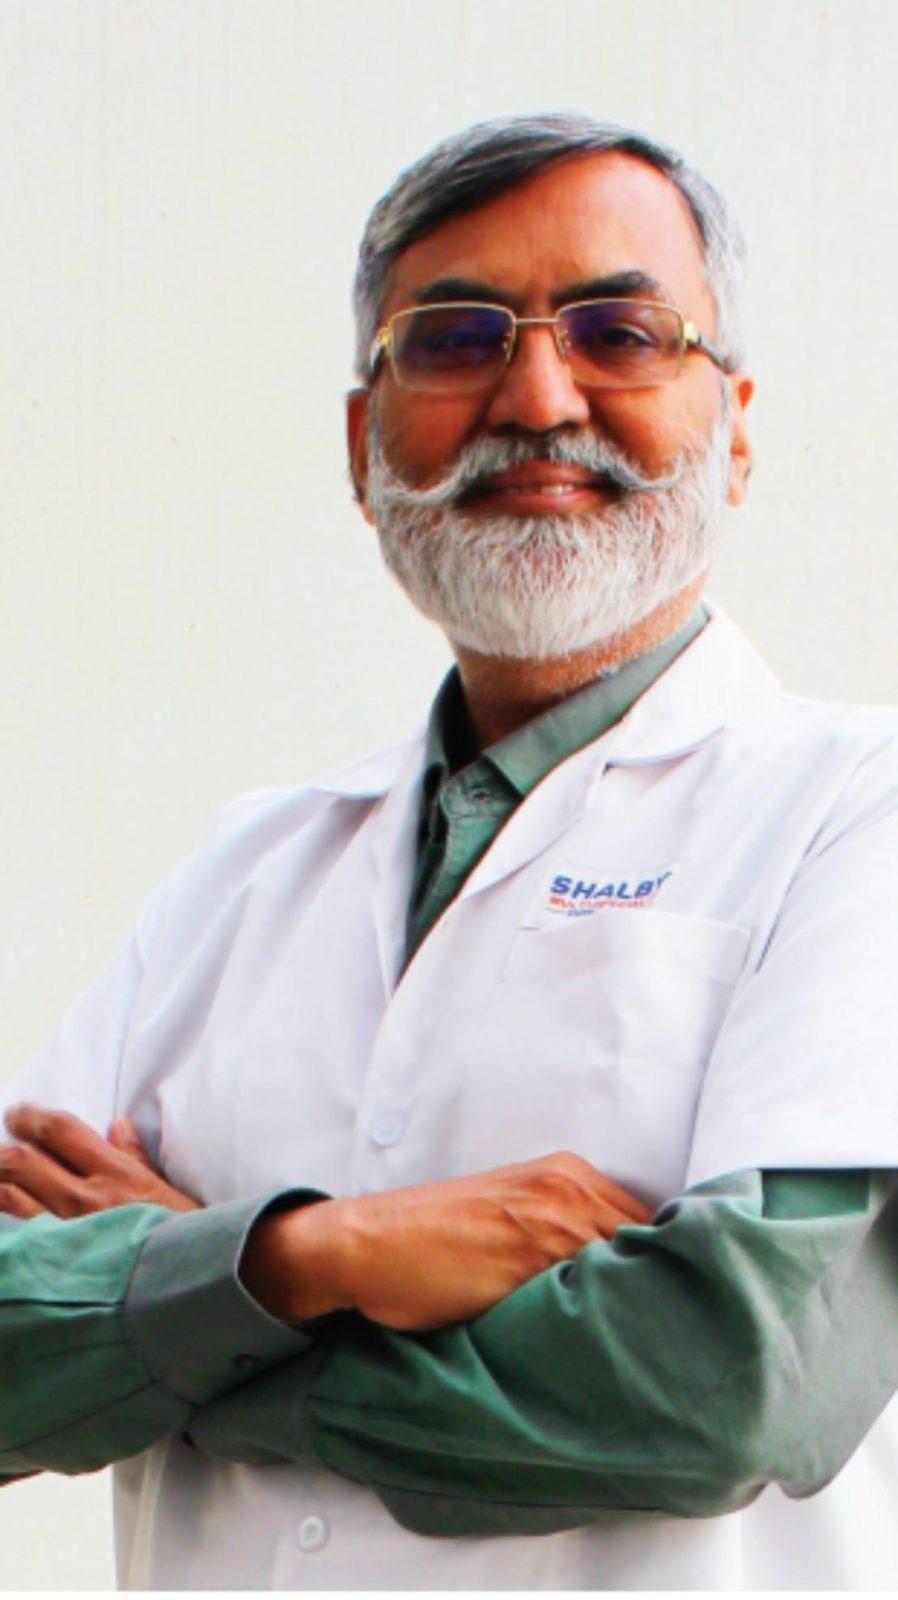 Dr. Purvish Parikh,
Mumbai  